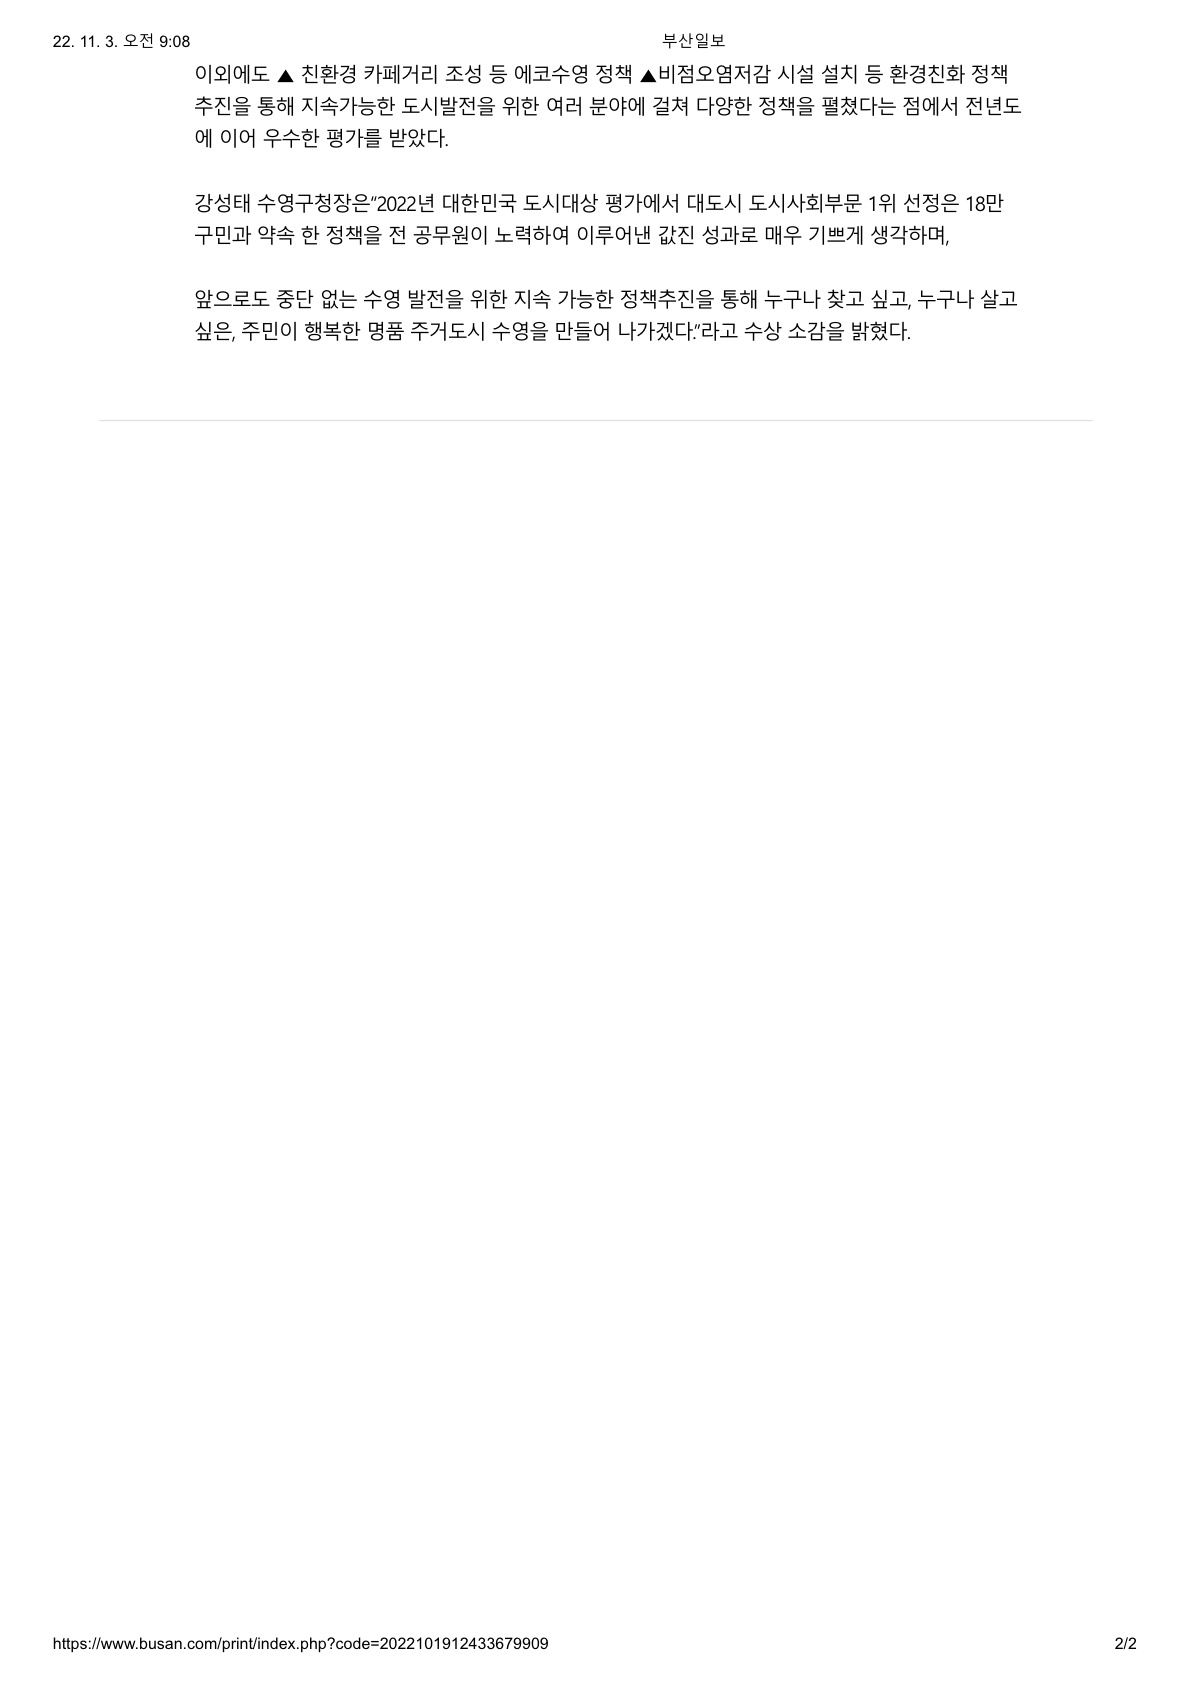 [부산일보]수영구, 2022 대한민국 도시대상 8년 연속 수상 2